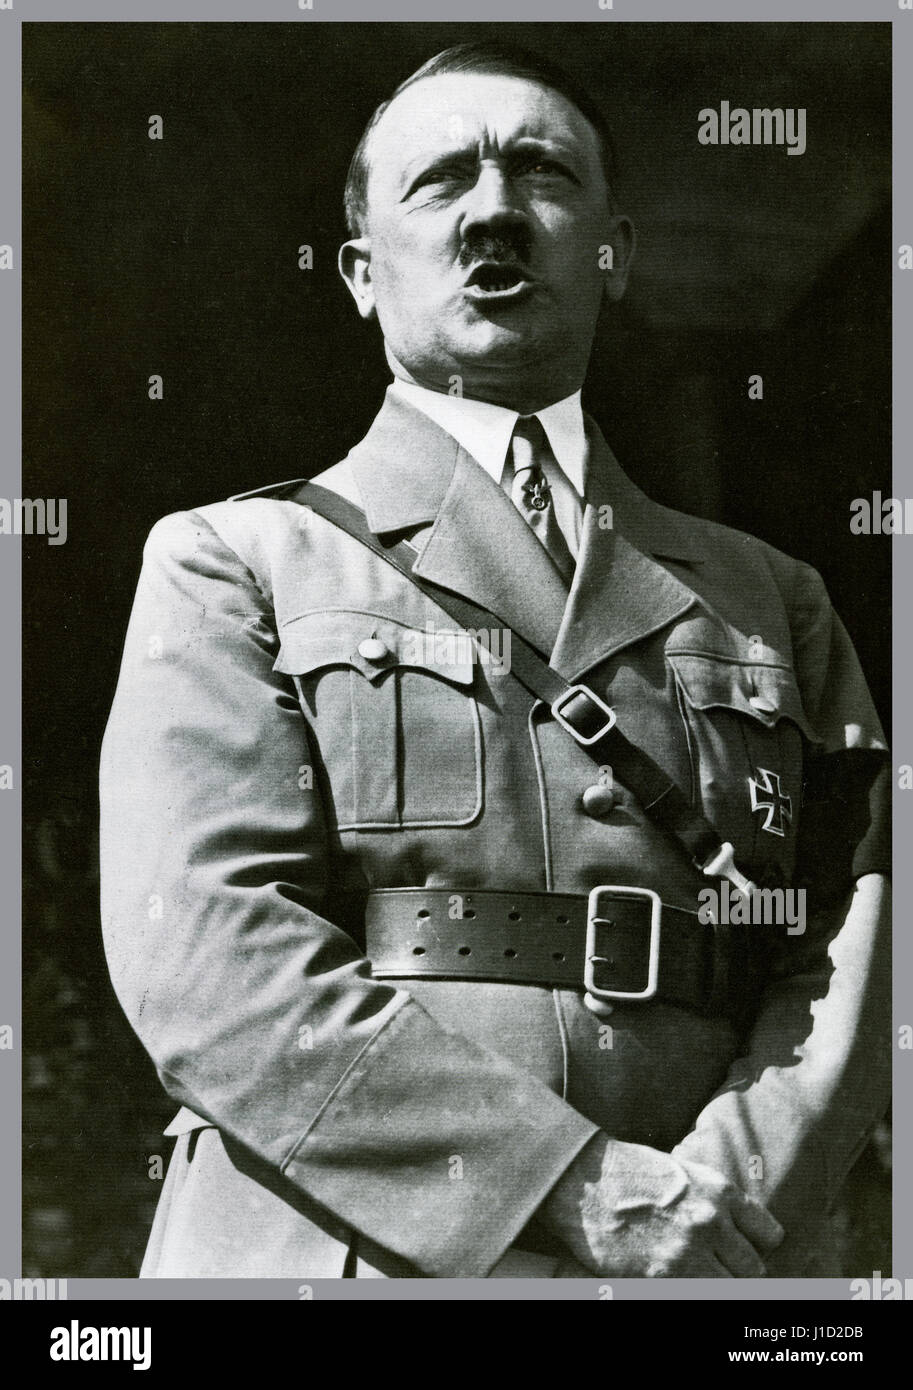 Adolf Hitler en uniforme portant une croix de fer a accordé l'autonomie de la médaille d'un discours à un rassemblement de jeunesse d'Hitler à Nuremberg Allemagne 1934 Banque D'Images